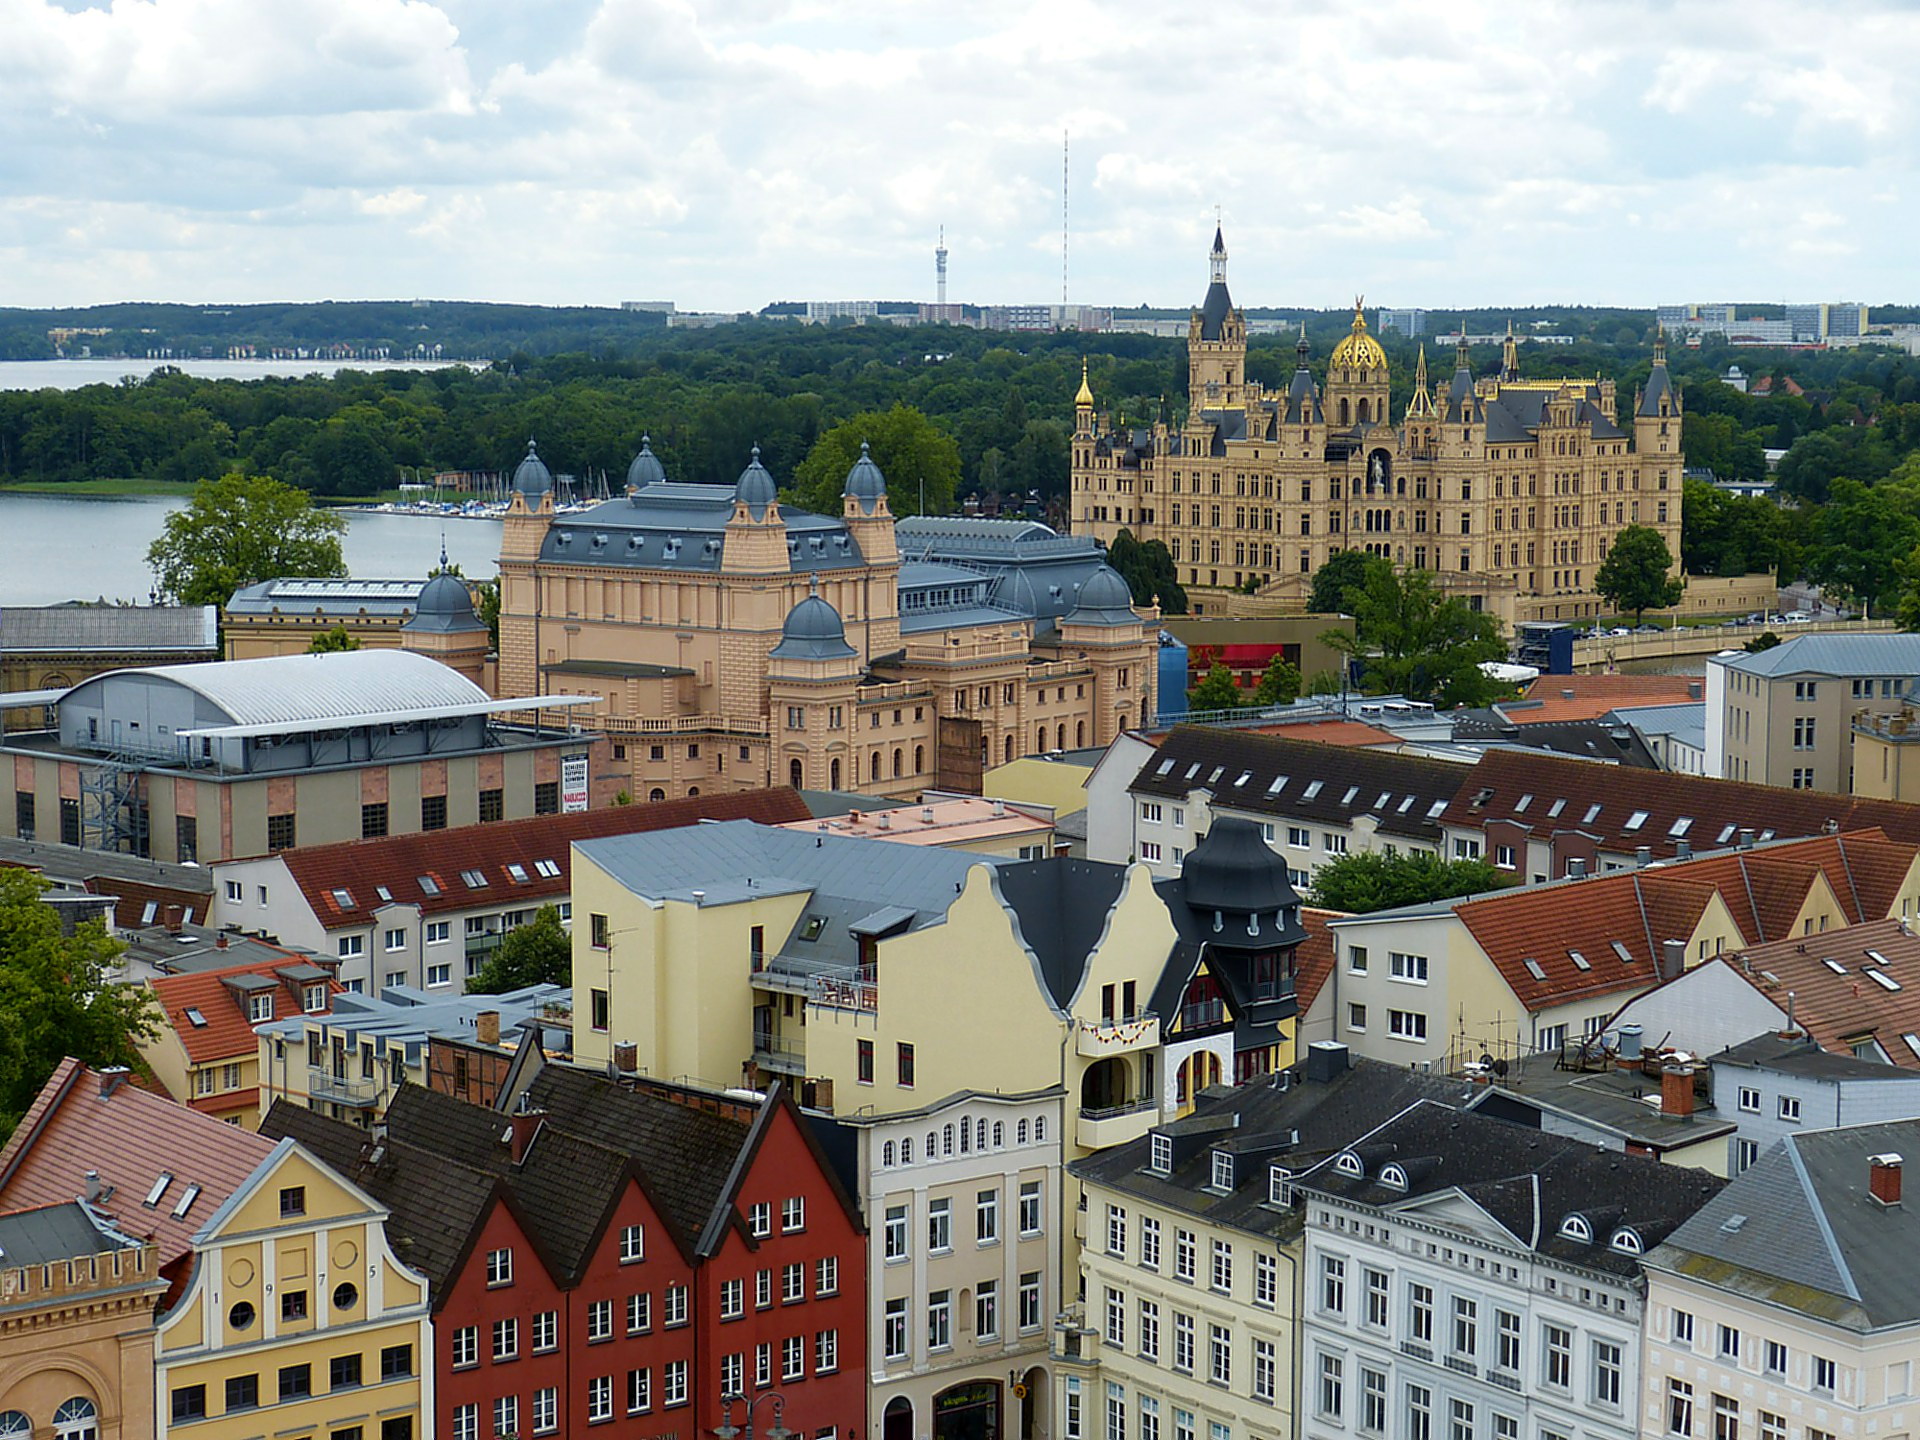 1000 Jahre Ersterwähnung Schwerins: Vergibt die Stadt eine Chance?